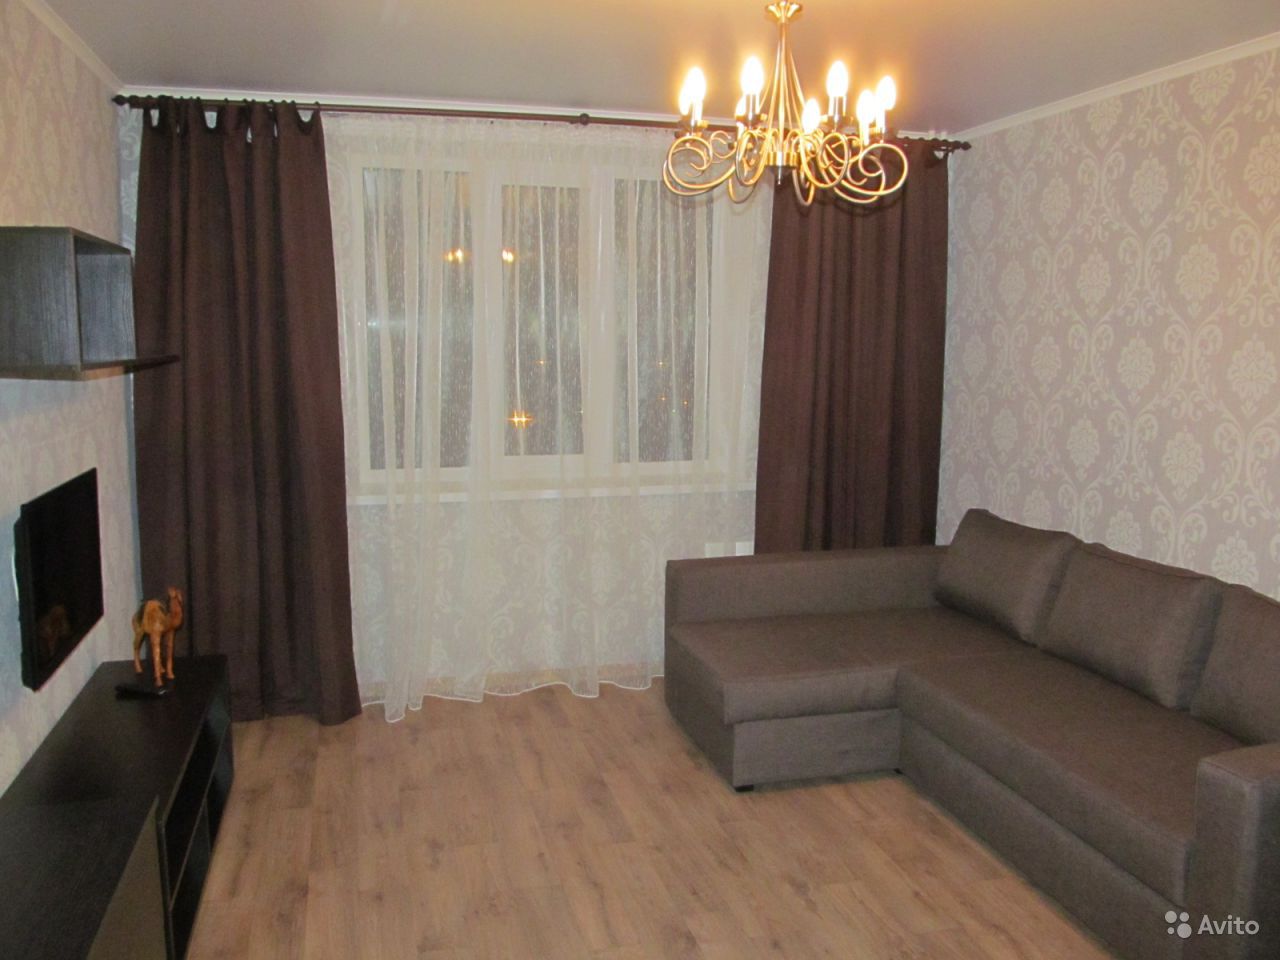 Обмен квартиры на дом в тольятти на авито с фото